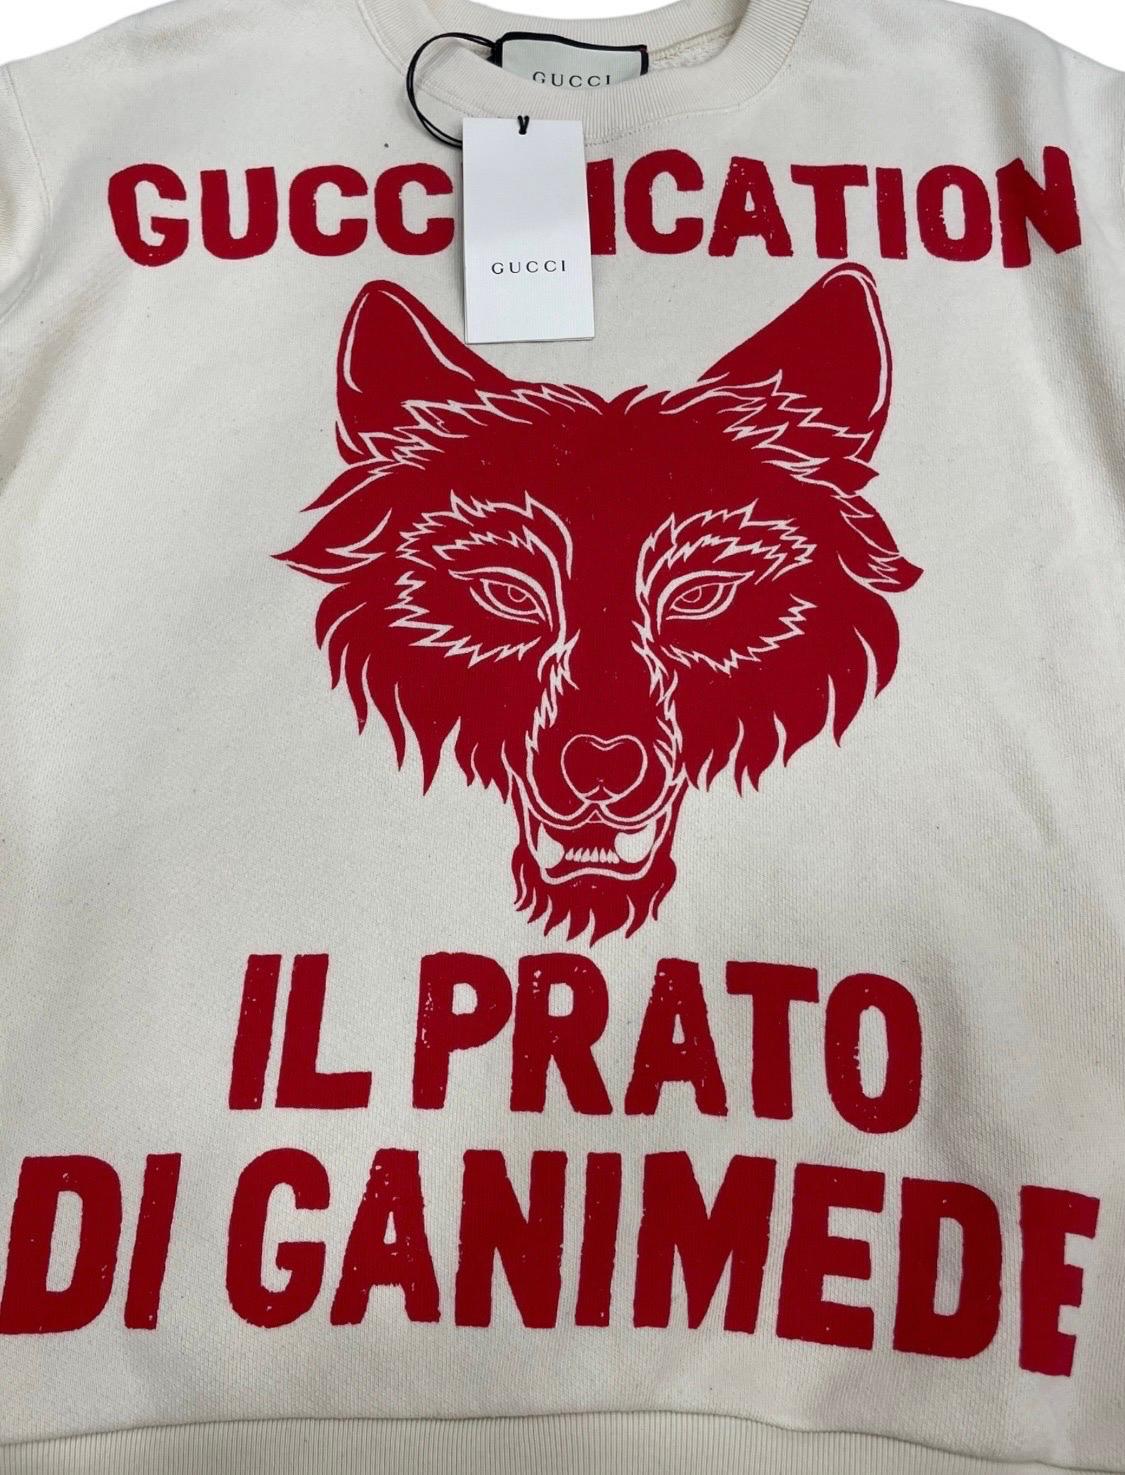 Felpa firmata Gucci, modello Il prato di Ganimede, realizzata in cotone garzato bianco e rosso. Taglia S. L’articolo si presenta in ottime condizioni, ancora